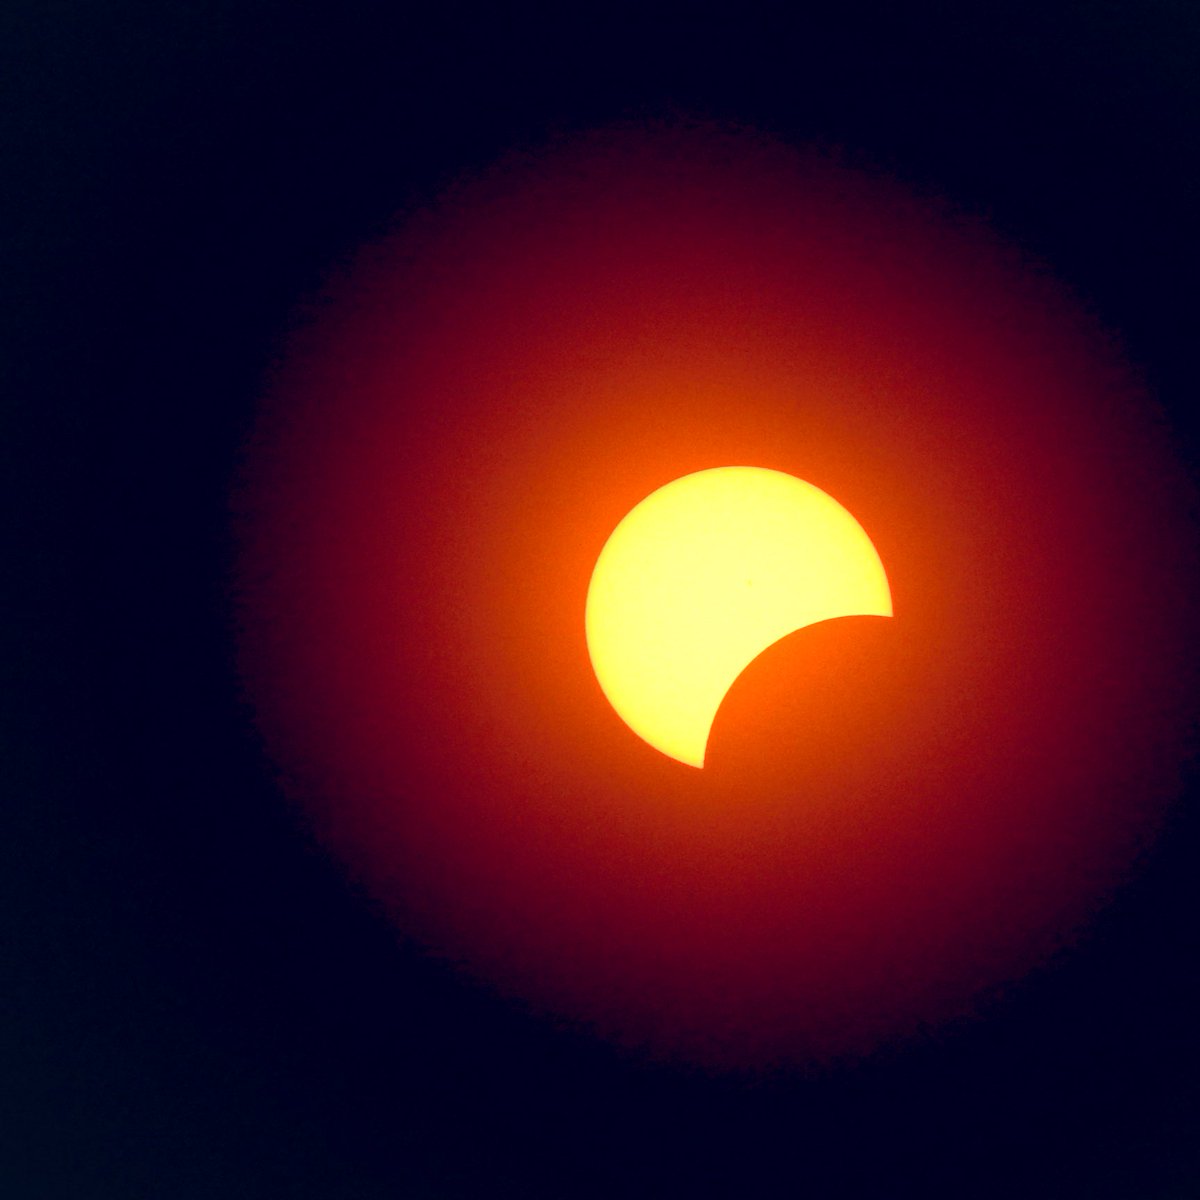 #Eclipse in Cincinnati.